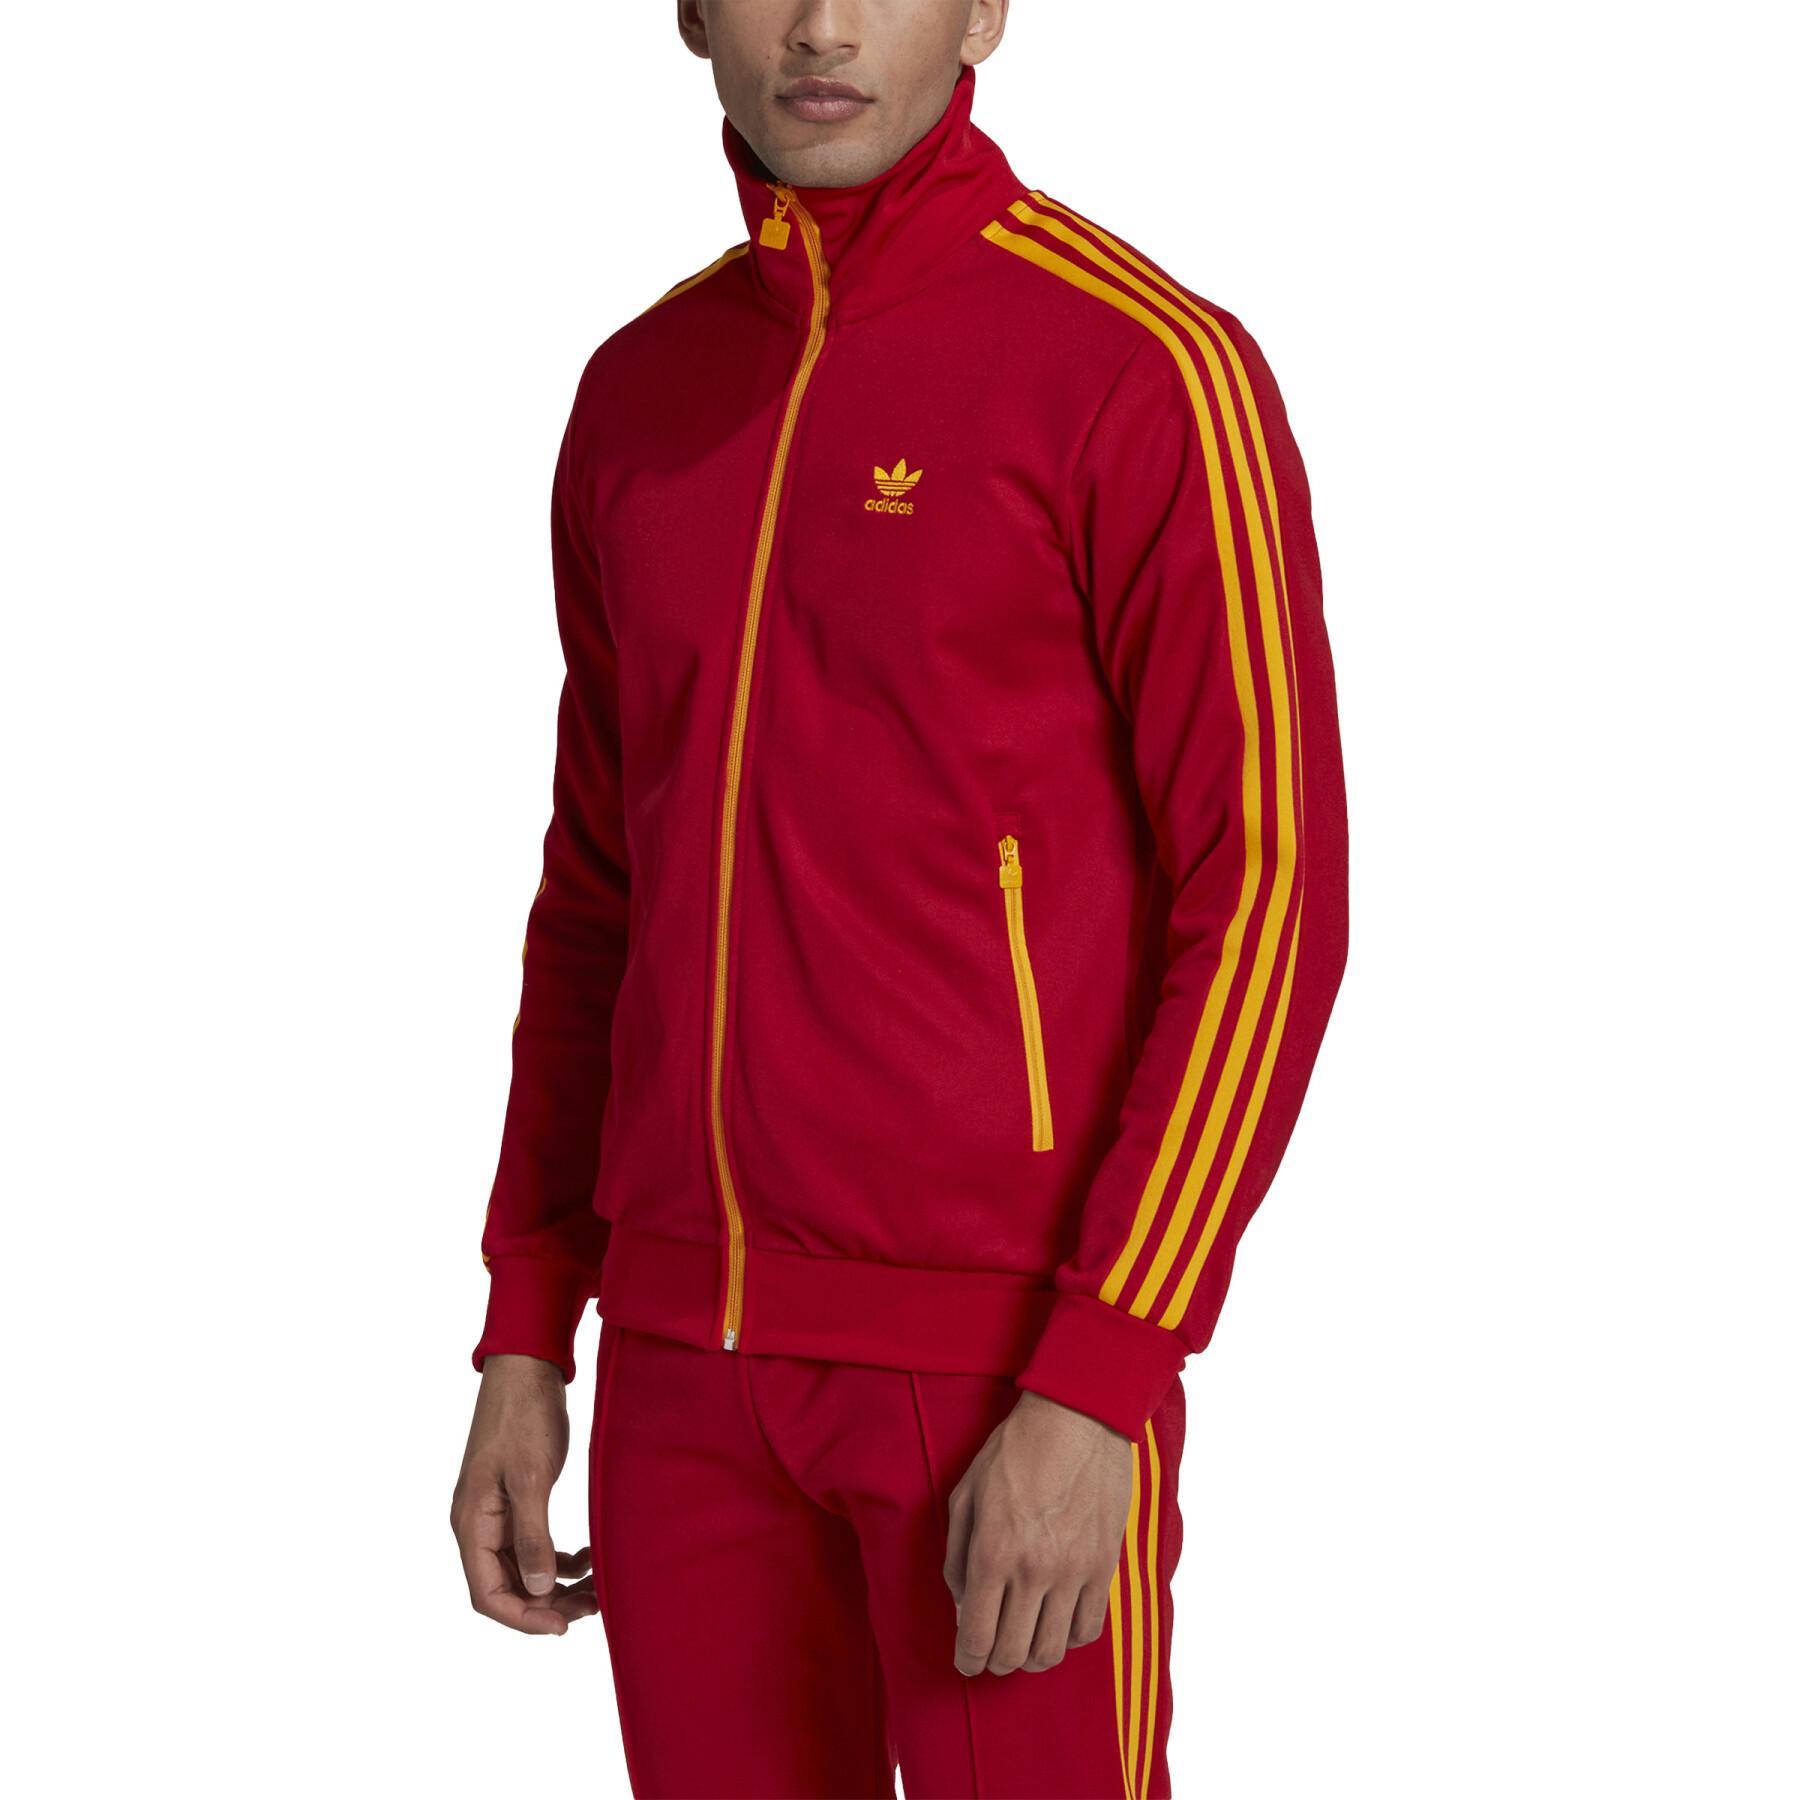 Sweat jacket adidas Originals Beckenbauer